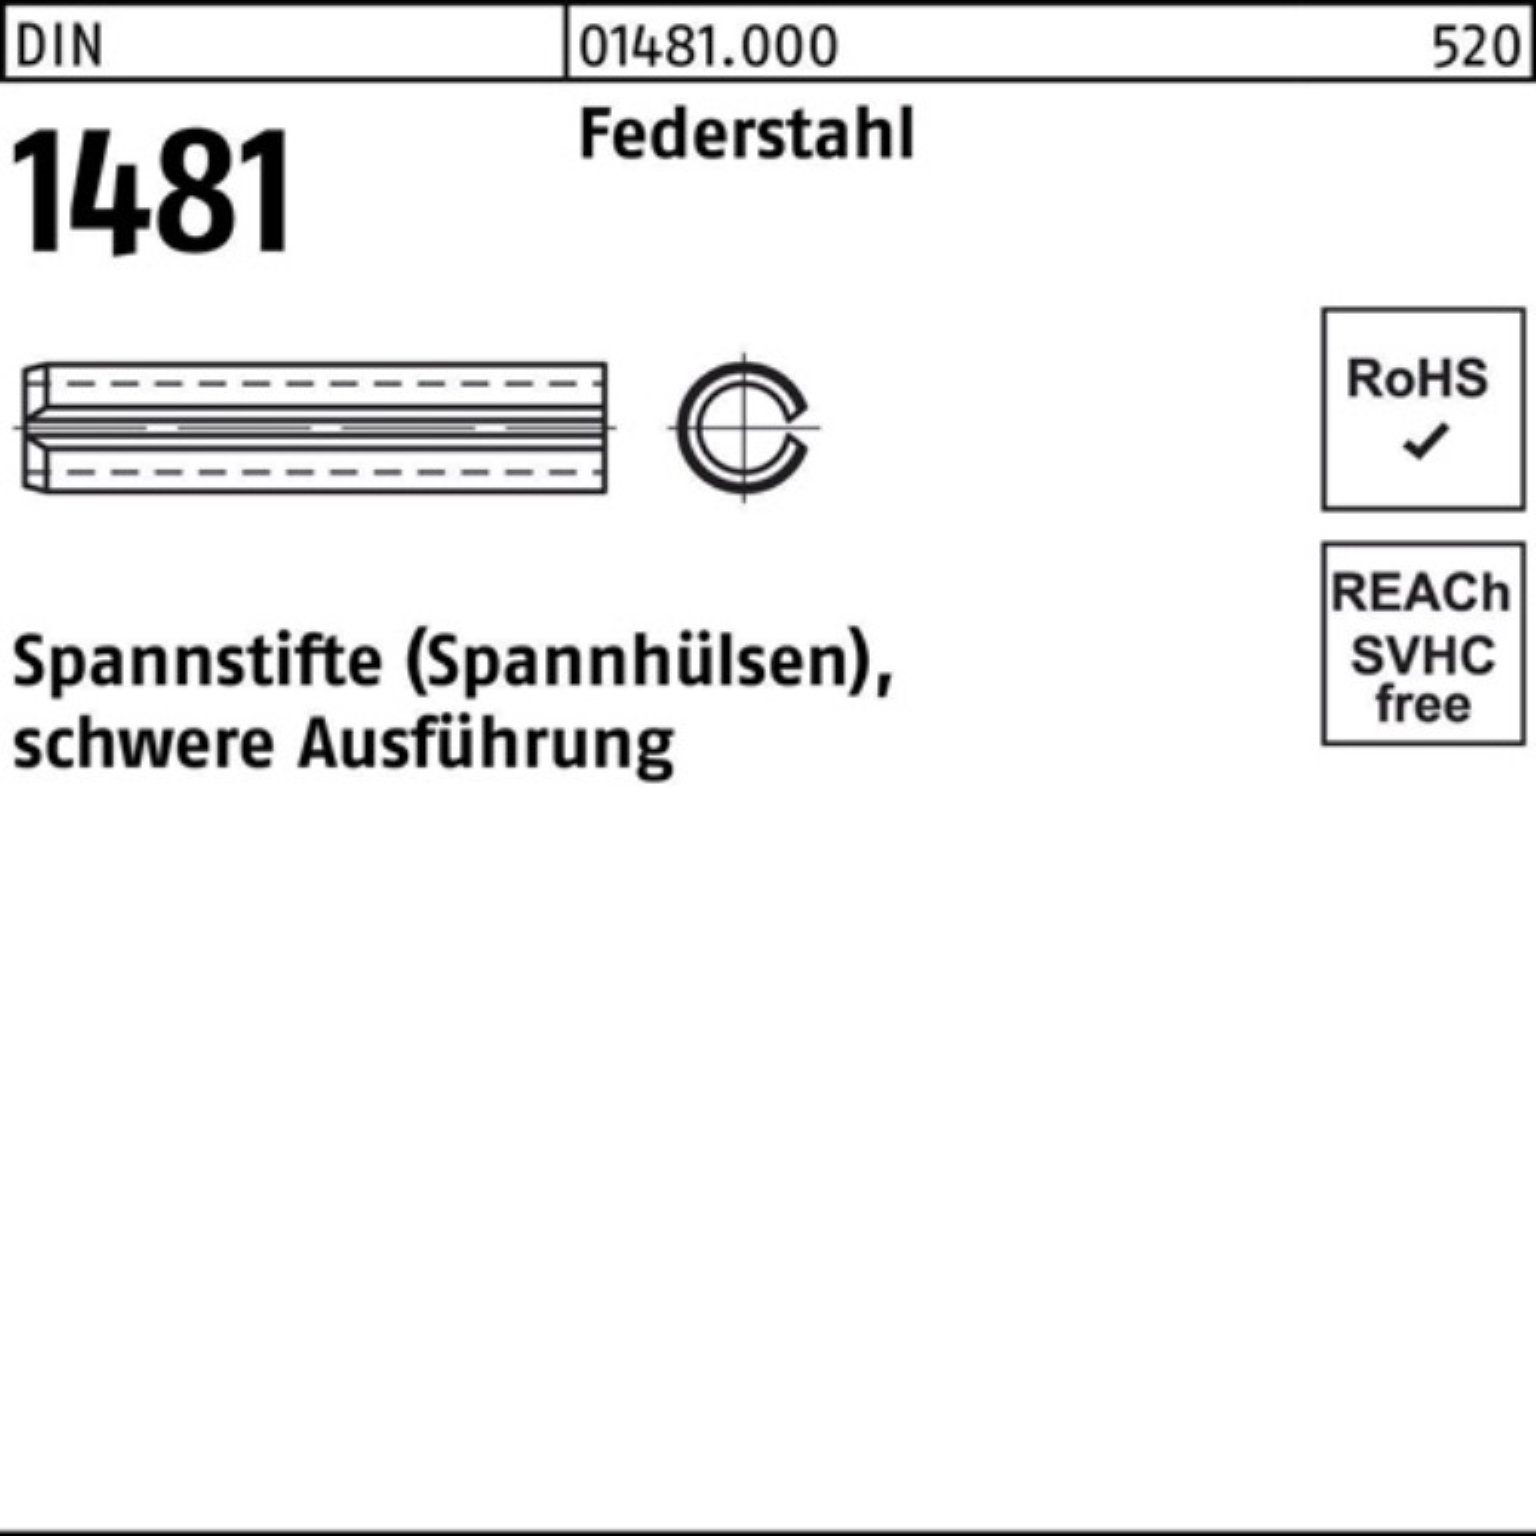 Reyher Spannstift 100er Federstahl schwere 16x DIN Spannstift 1481 Ausführung 2 Pack 30